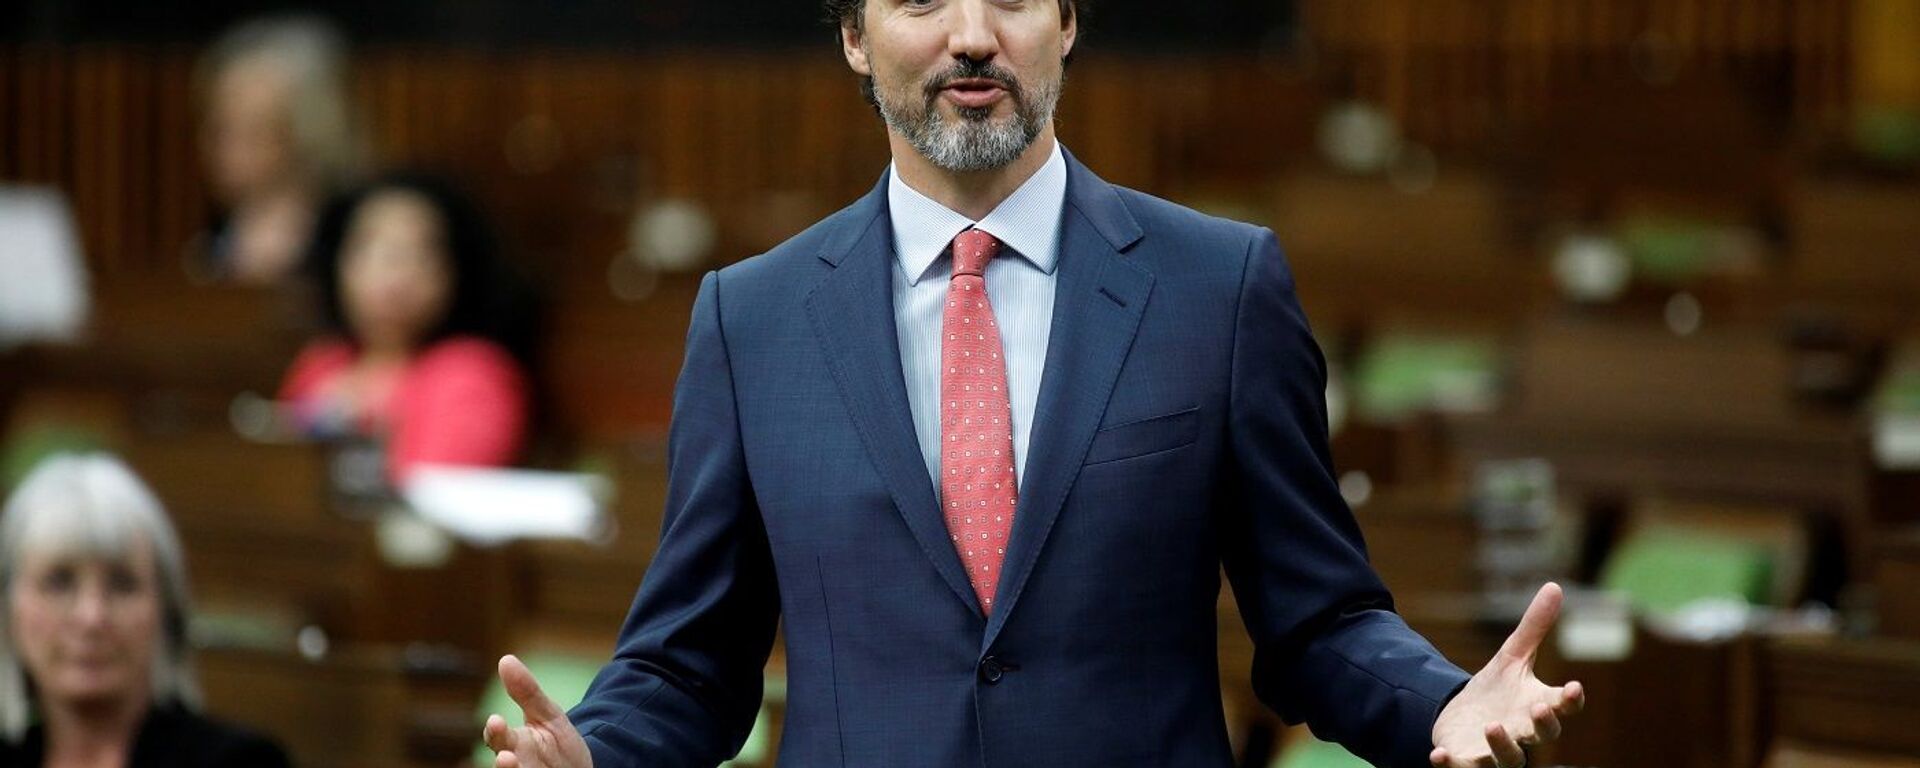 Kanada Başbakanı Justin Trudeau - Sputnik Türkiye, 1920, 21.12.2020